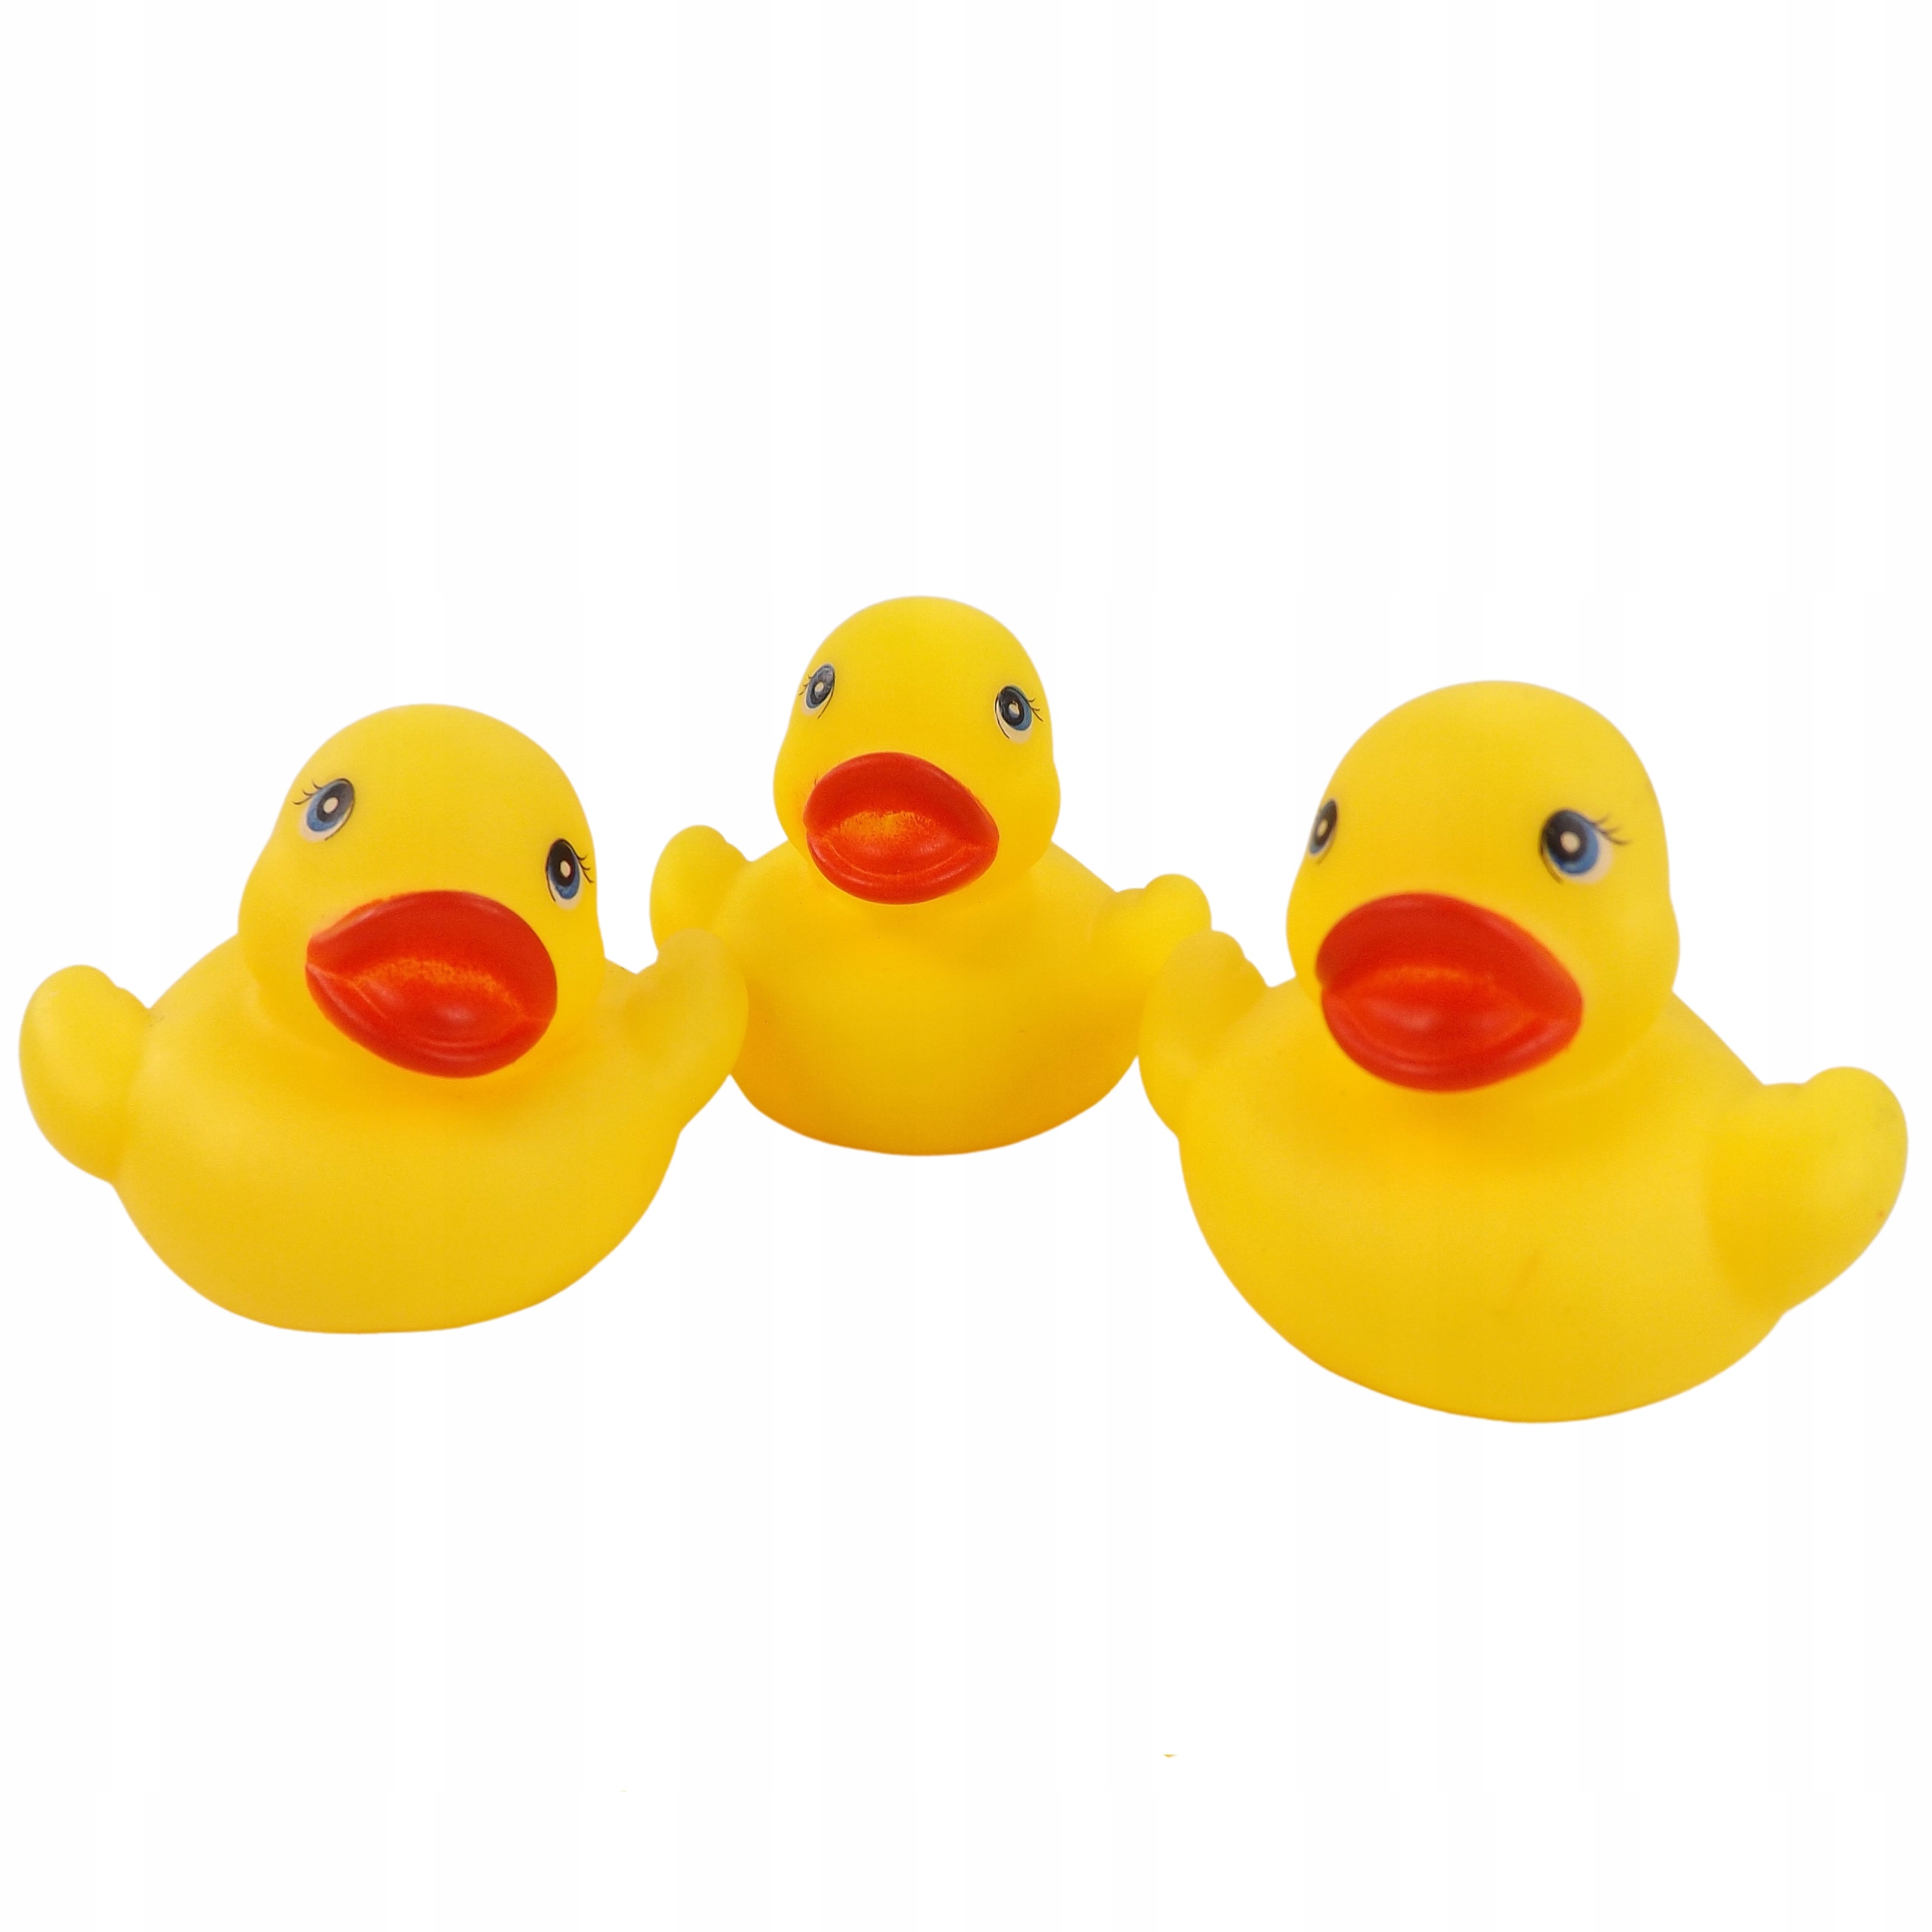 Gumowe kaczki kaczuszki zabawki do kąpieli 3702 Waga produktu z opakowaniem jednostkowym 0.17 kg